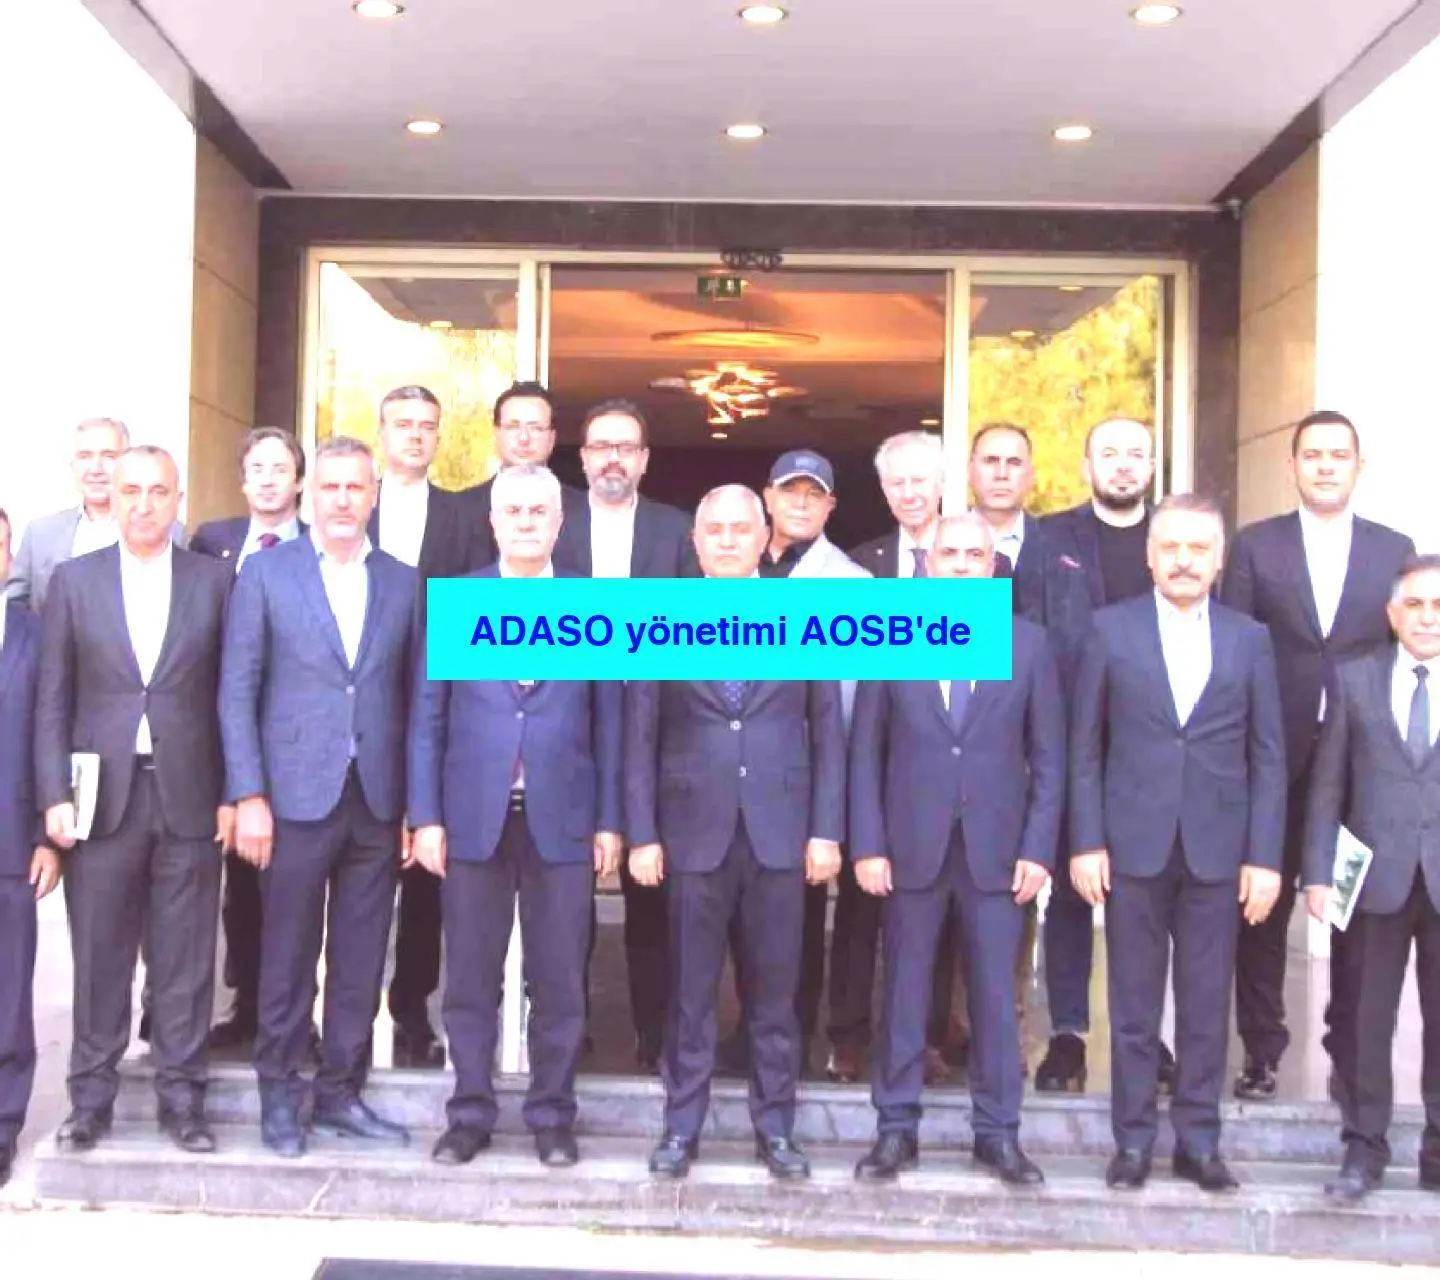 ADASO yönetimi AOSB’de